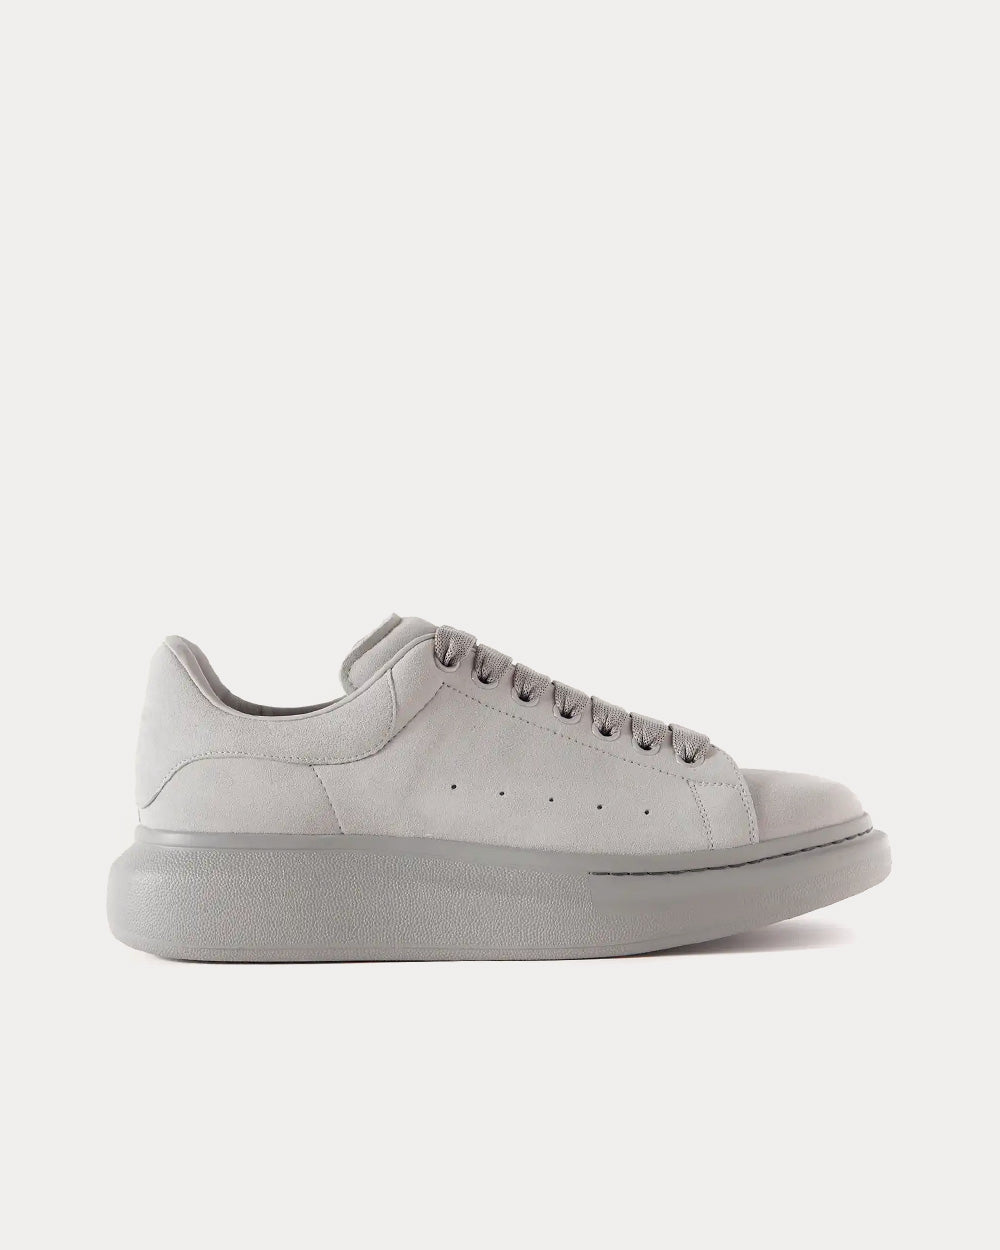 Alexander McQueen - Oversized Suede Grey Low Top Sneakers